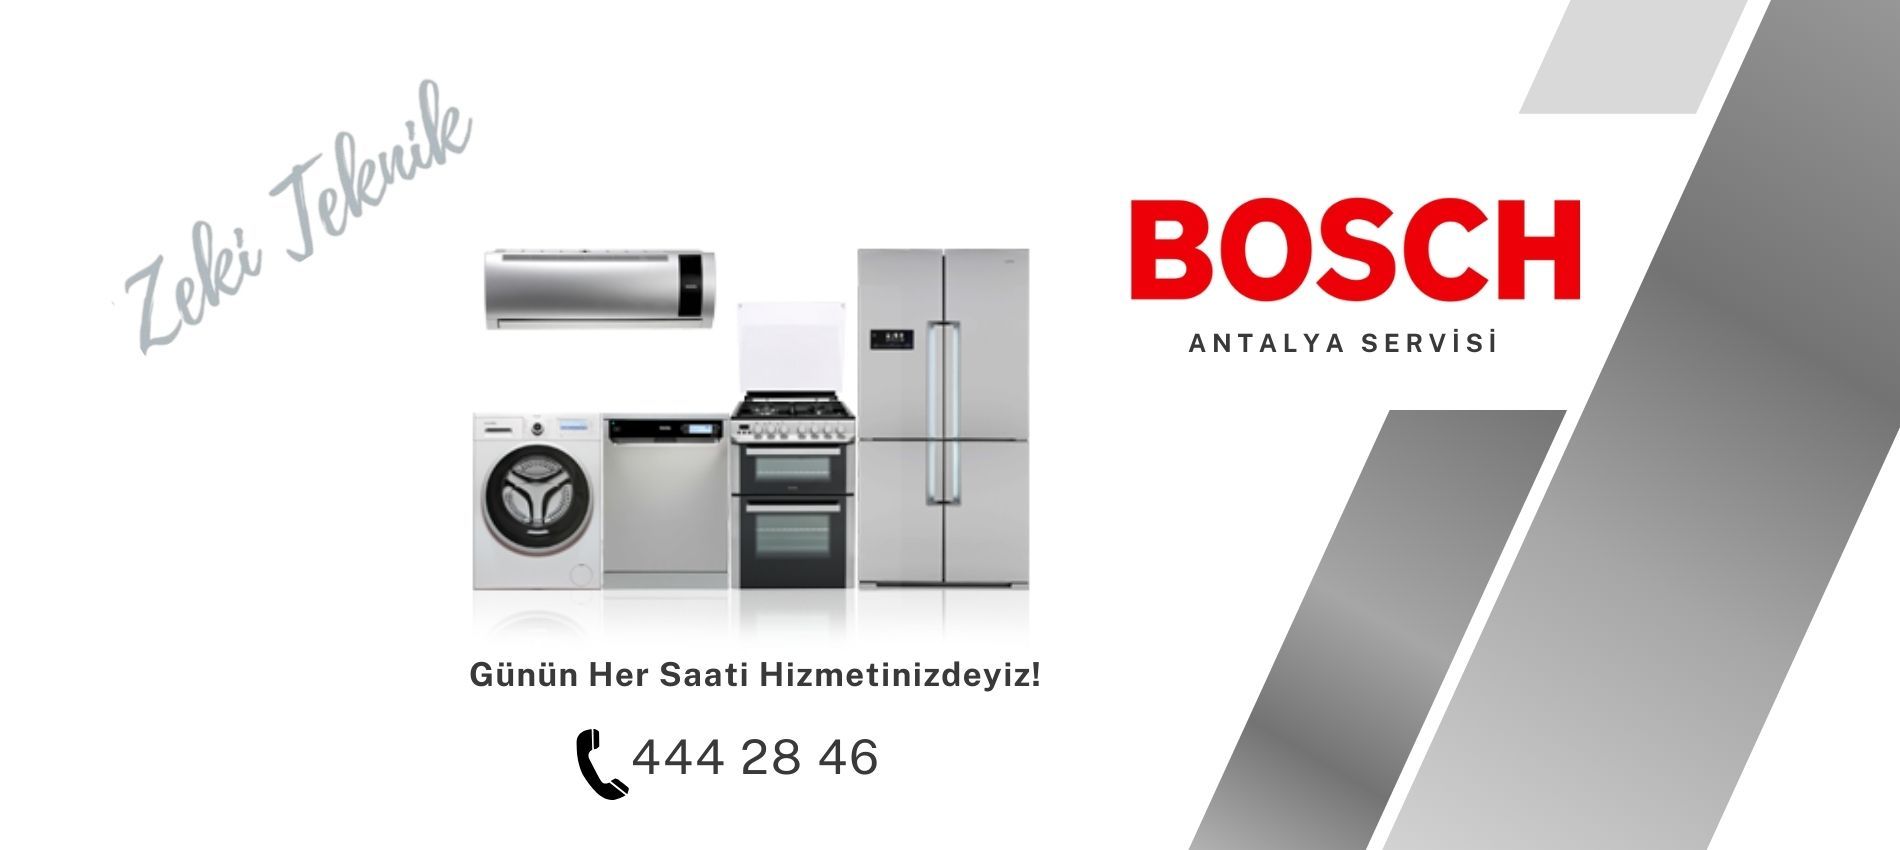 Bosch Servisi Antalya  